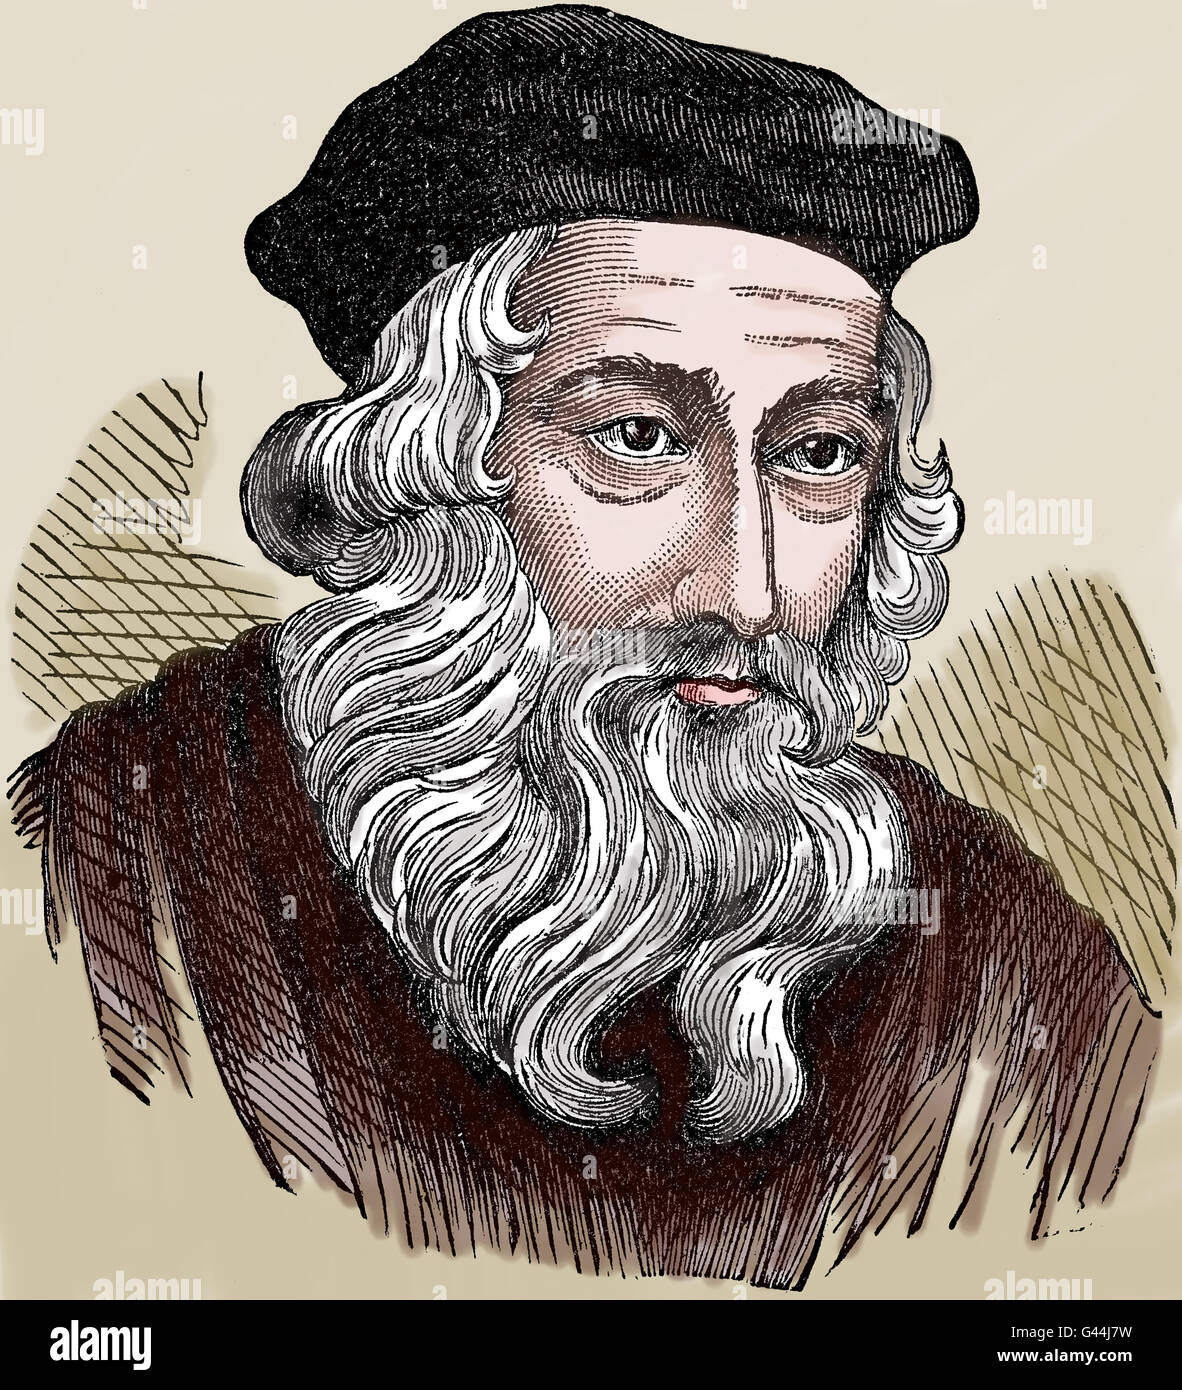 John Wycliffe (1320-1384). Englische scholastische Philosoph, Reformer und biblischen Übersetzer. Gravur. Farbige. Stockfoto